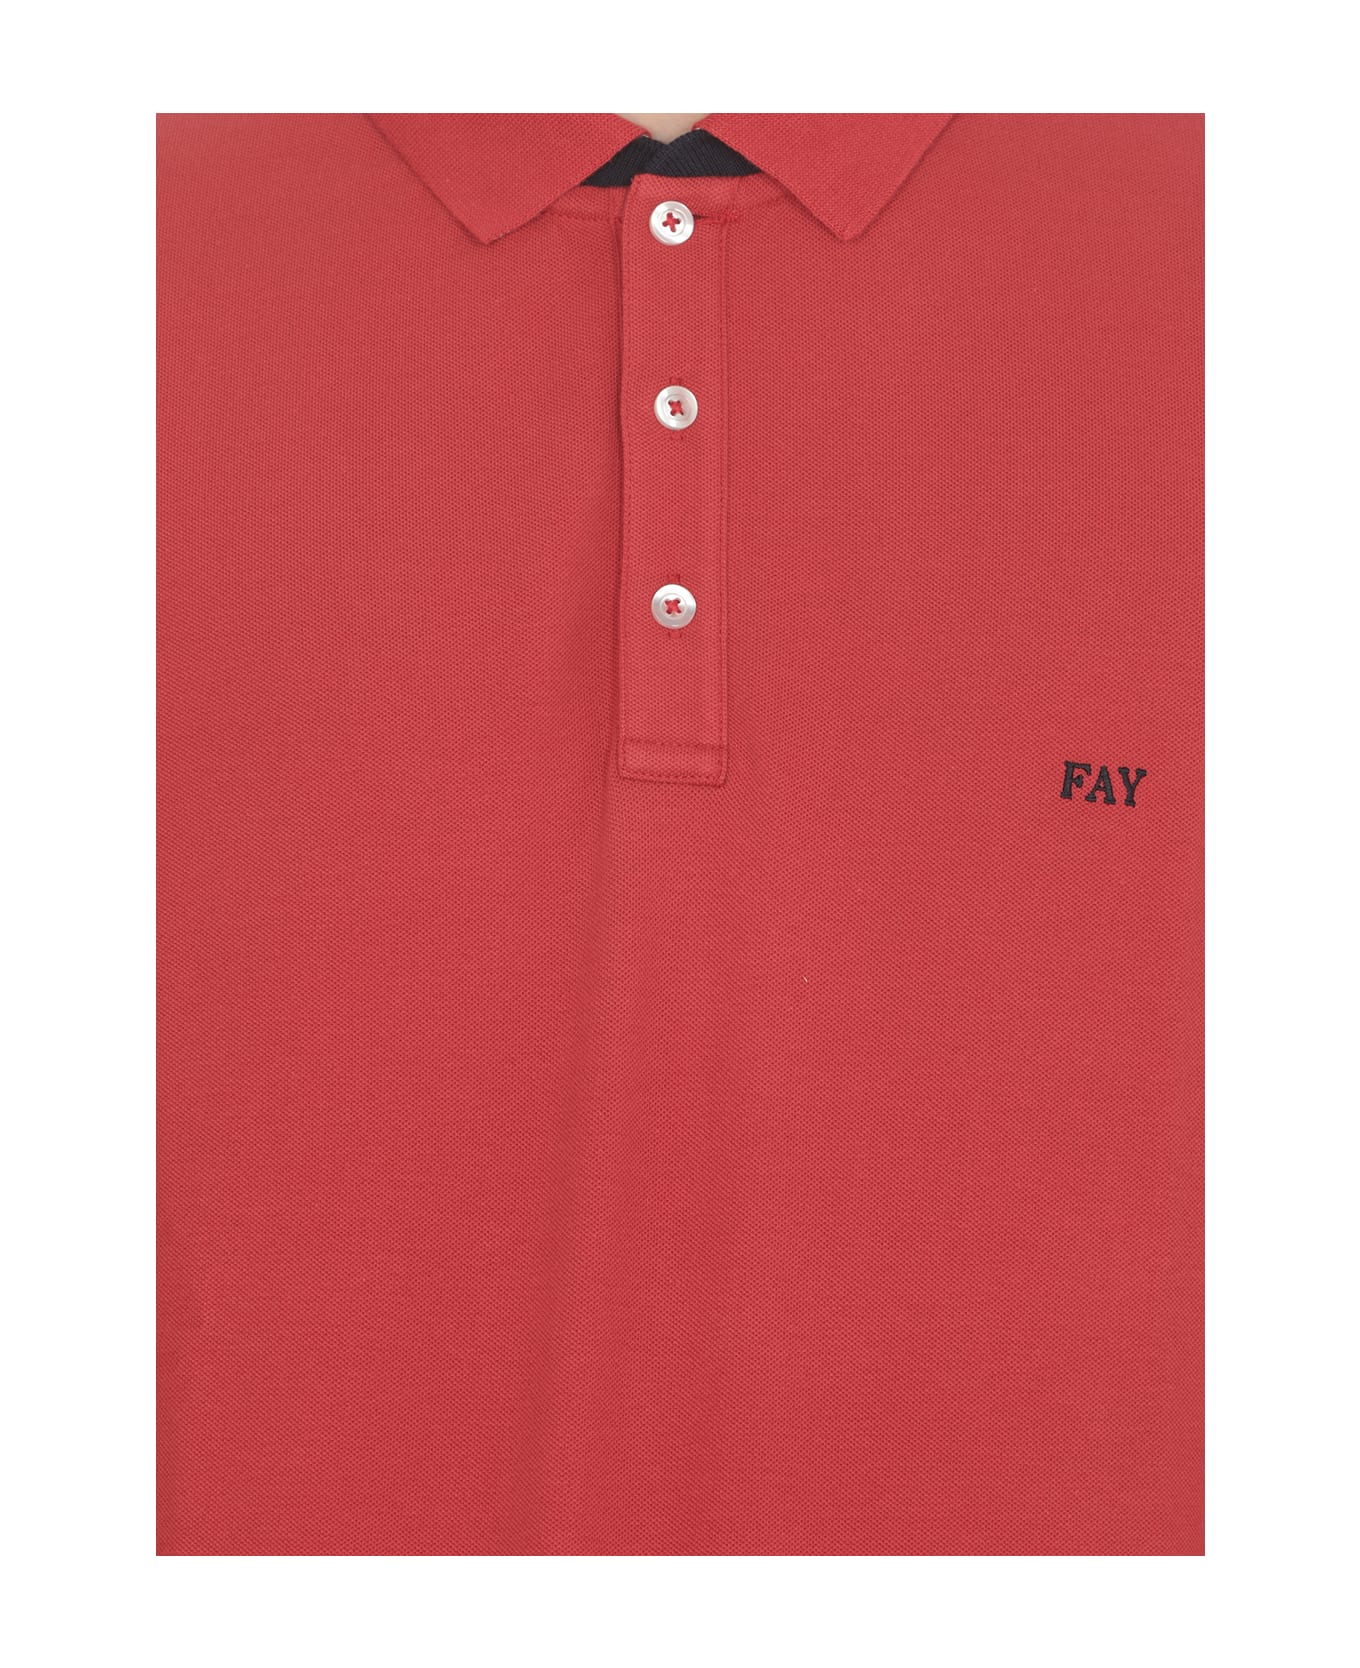 Fay Polo Shirt With Logo - Rubino scuro ポロシャツ